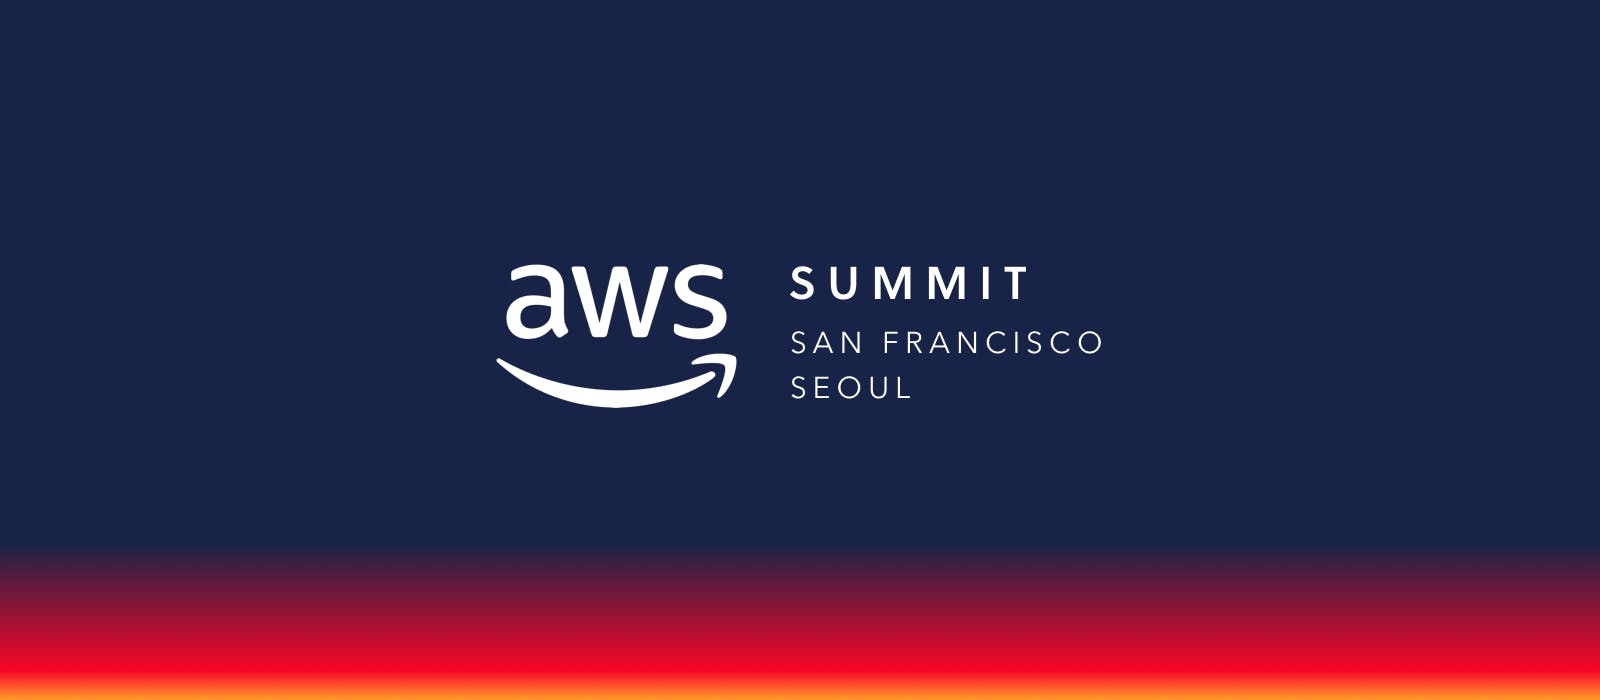 20180516 aws summit